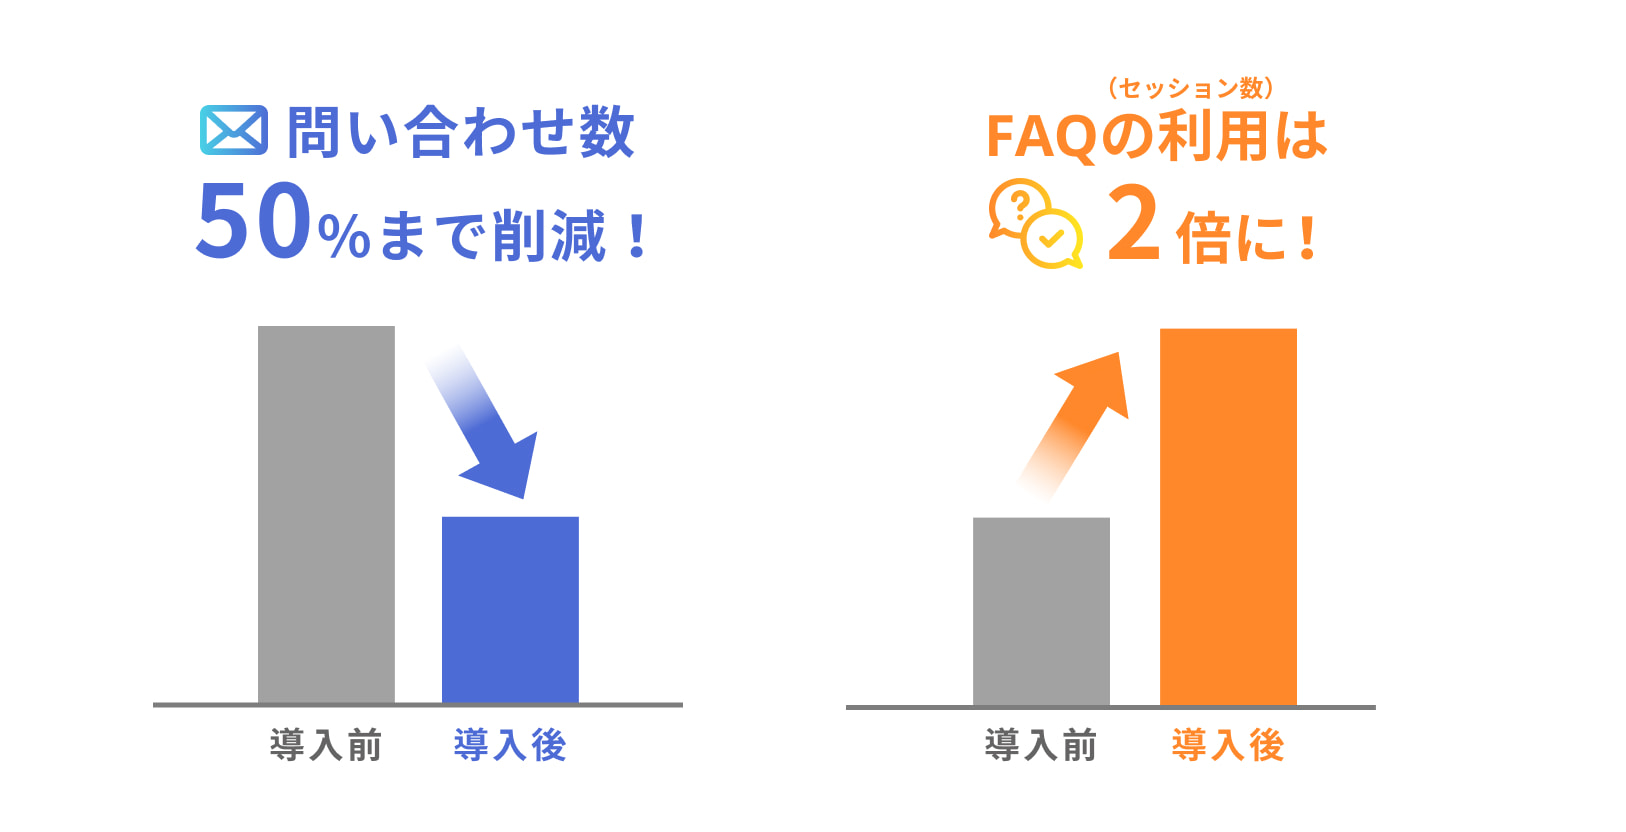 左には問い合わせ数50%まで削減の簡易グラフ、右にはFAQの利用（セッション数）は2倍になった簡易グラフ